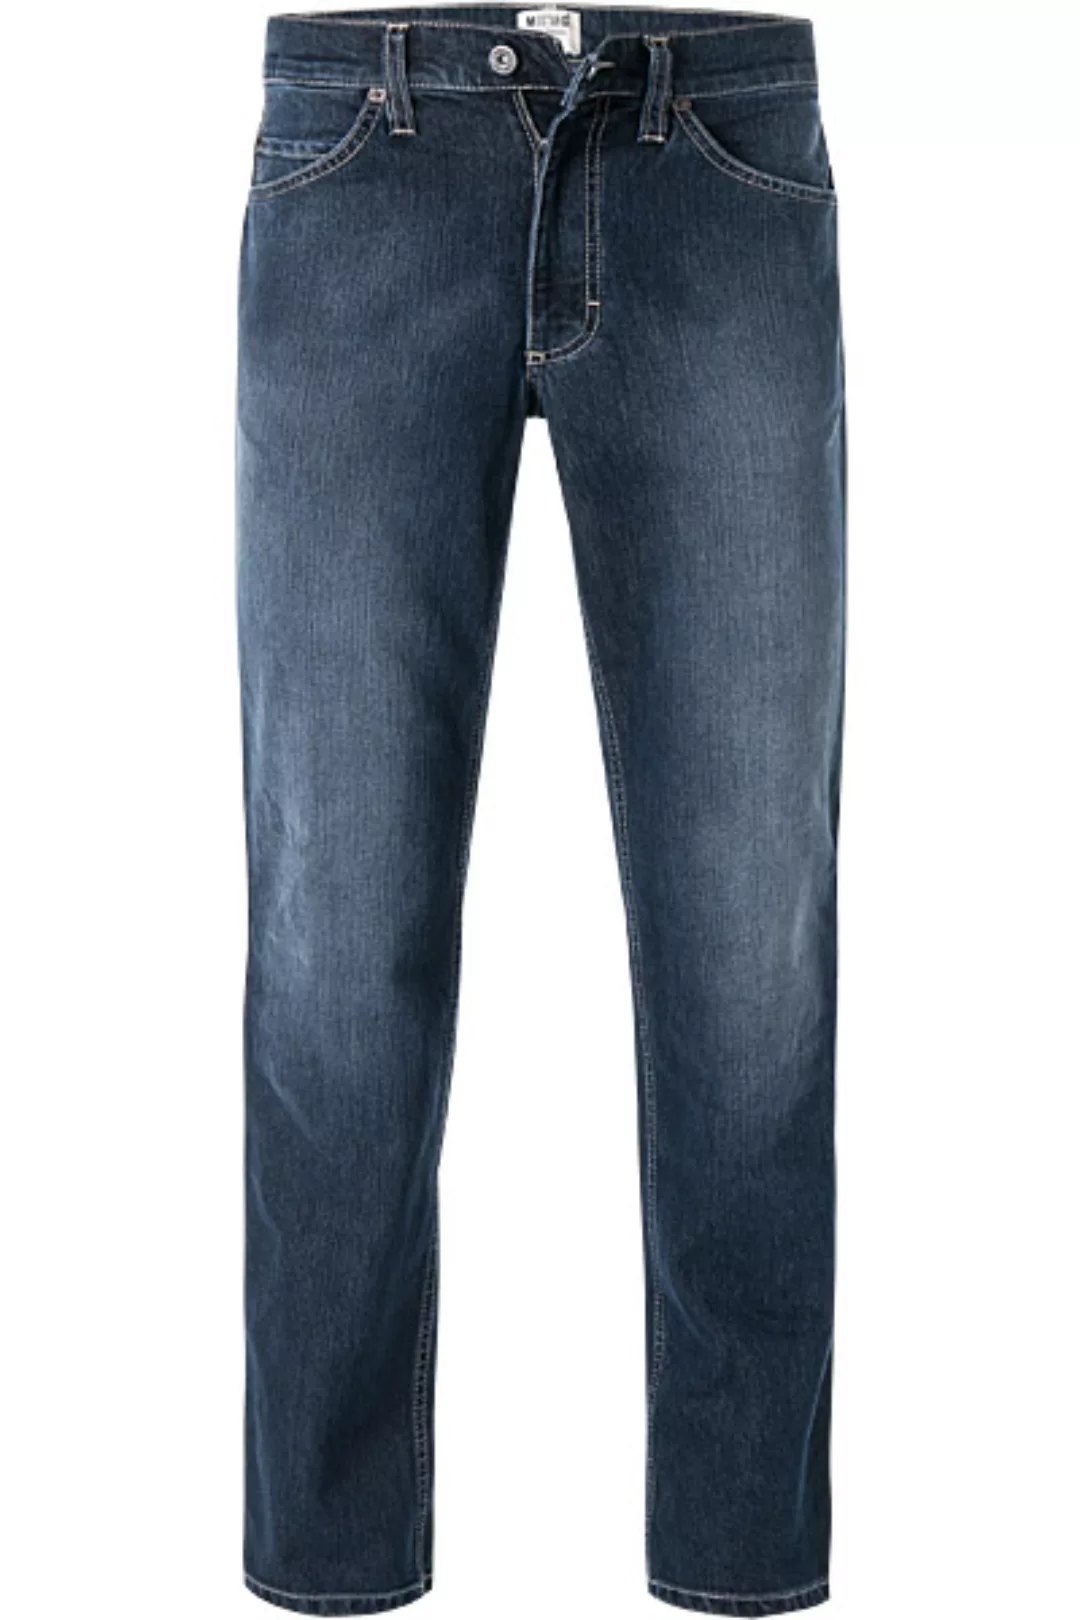 MUSTANG Jeans Tramper 1006742/5000/881 günstig online kaufen